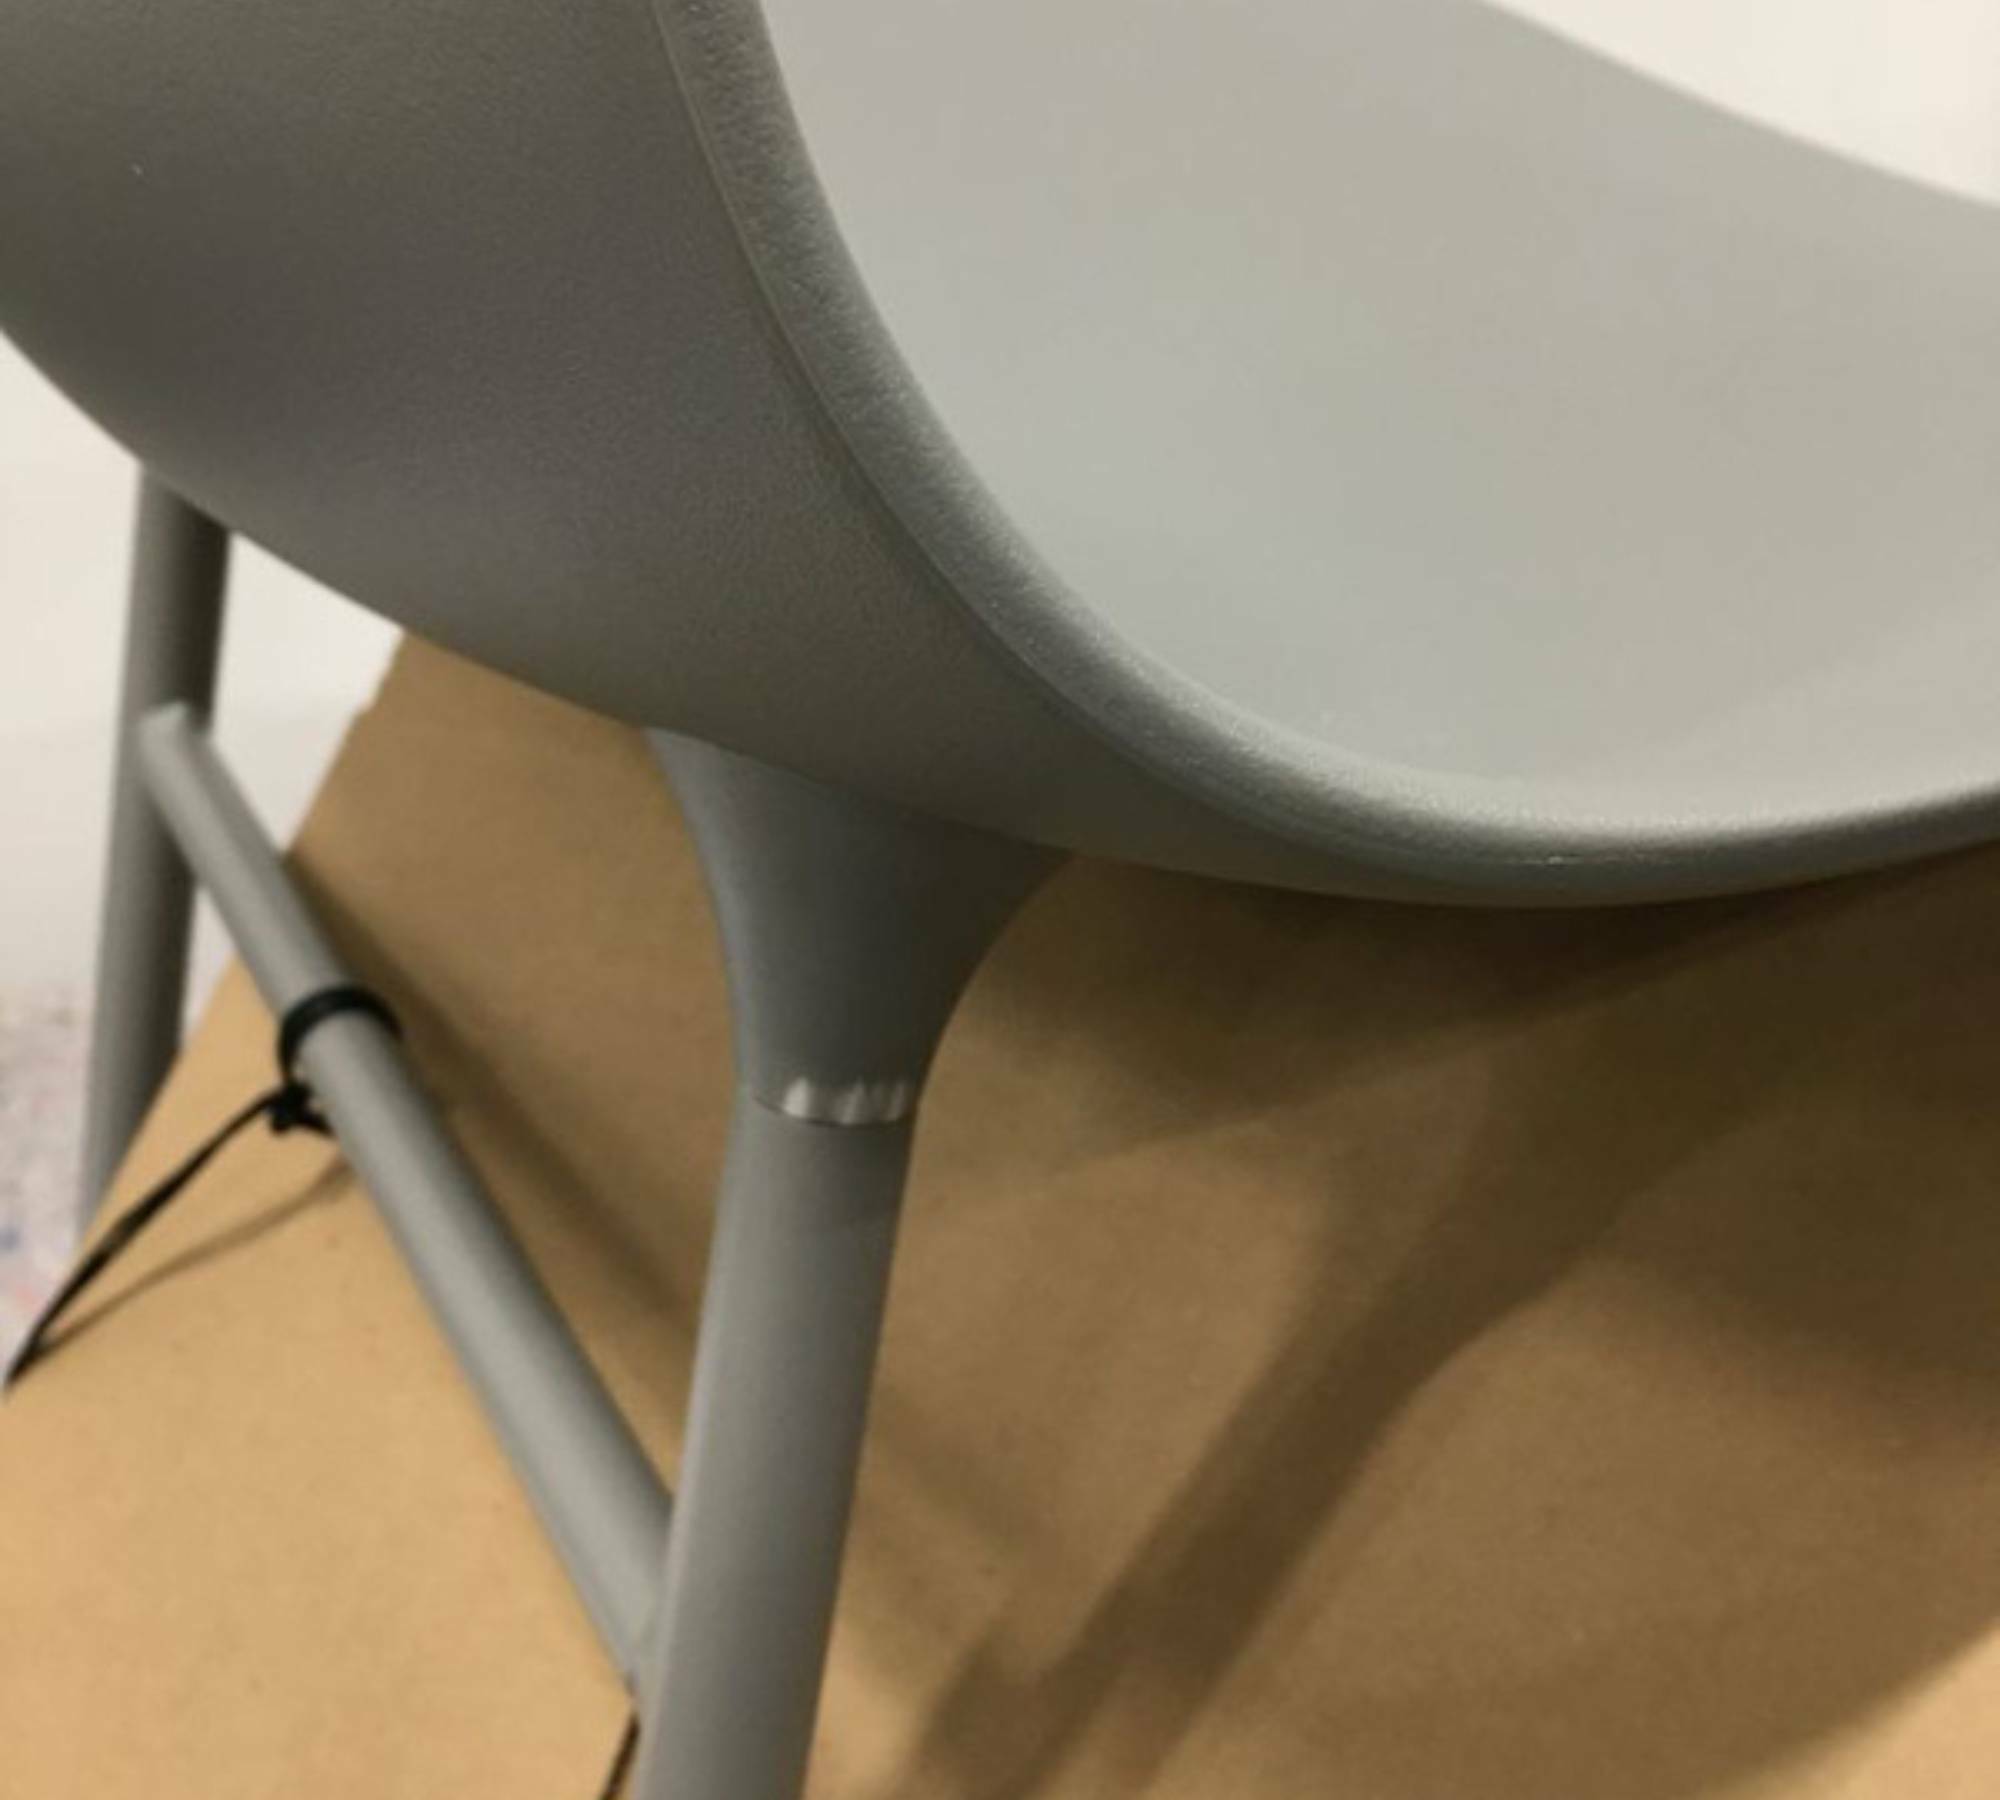 Form Stuhl Metall Kunststoff Grau 2